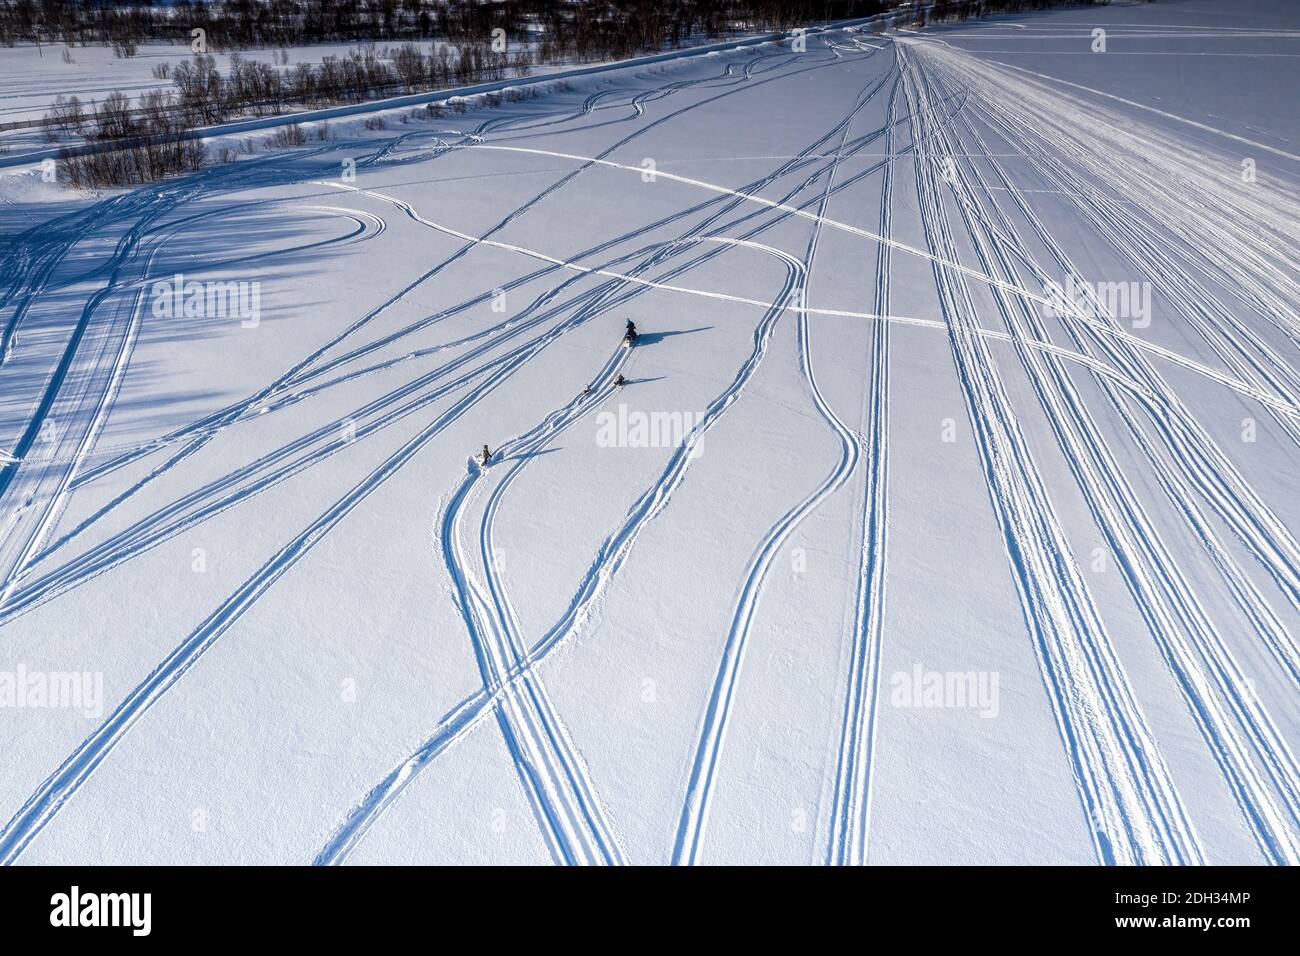 Landschaftlich schöne Luftaufnahme auf erwachsenen Fahrer zog zwei Kinder auf Schneefahrer mit Schneemobil, ein Kind in Schnee fallen - verloren ziehen Seil. Urlaubsaktivität, Stockfoto